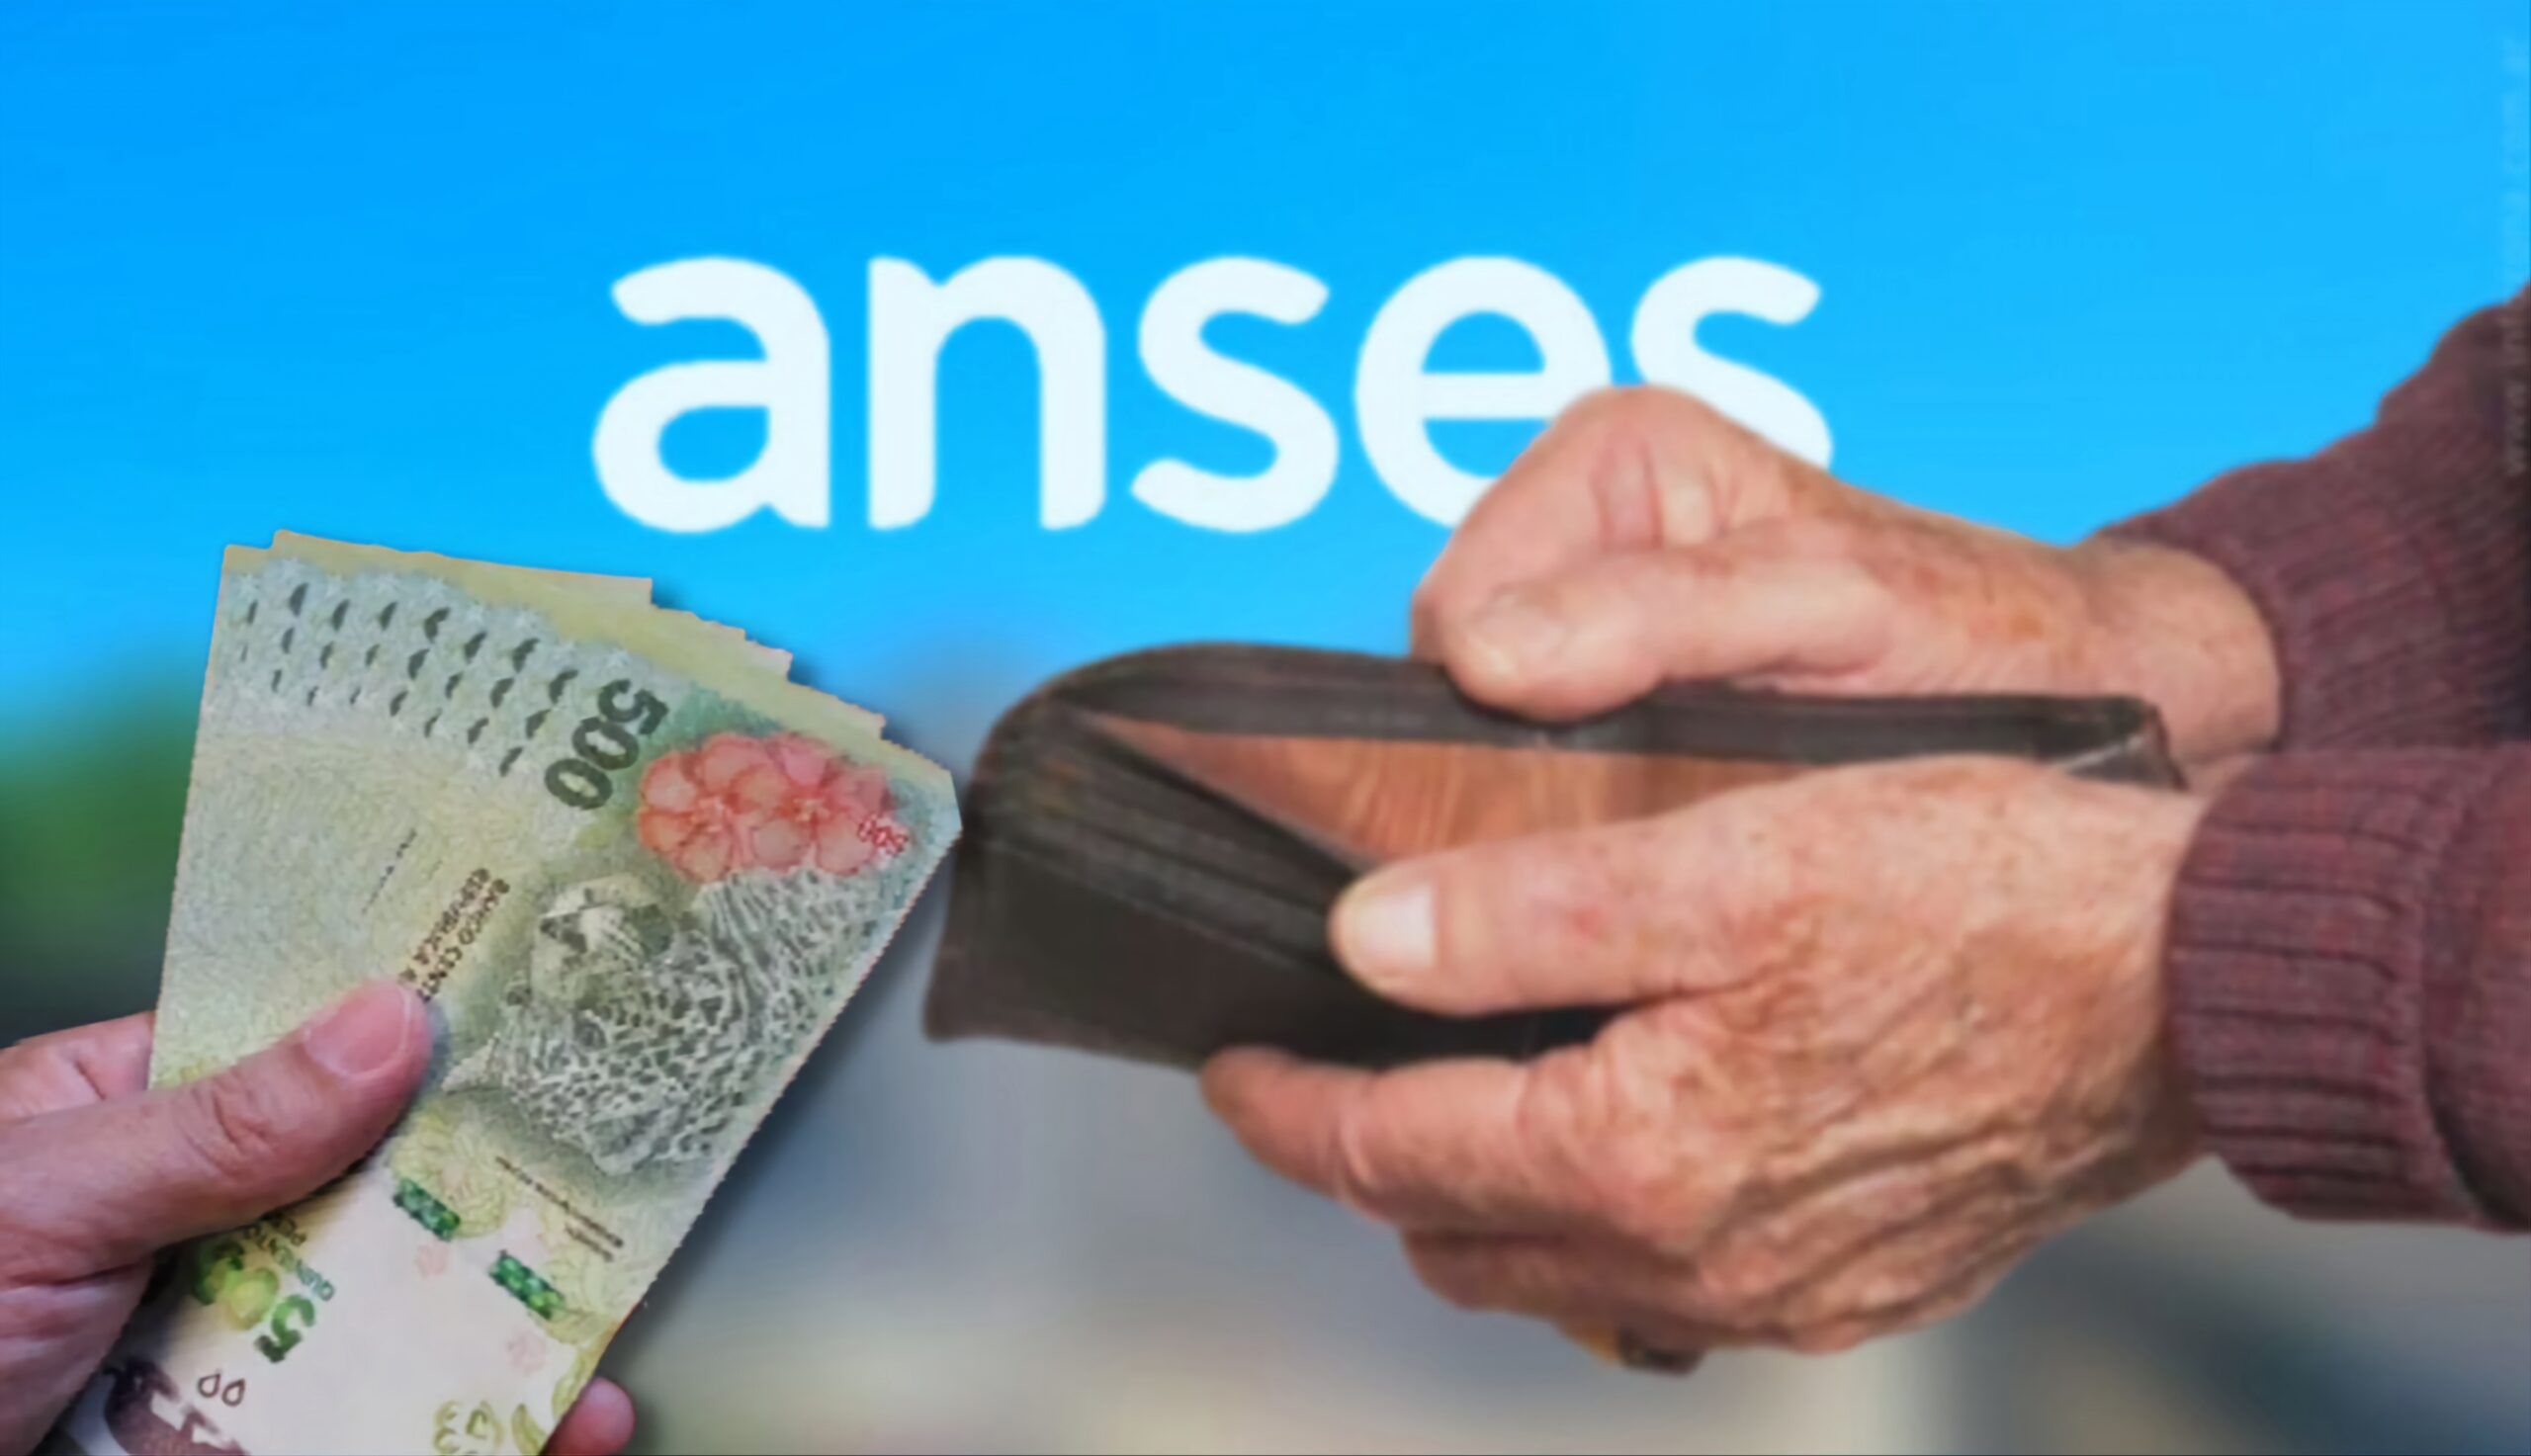 Nuevo bono para jubilados Anses